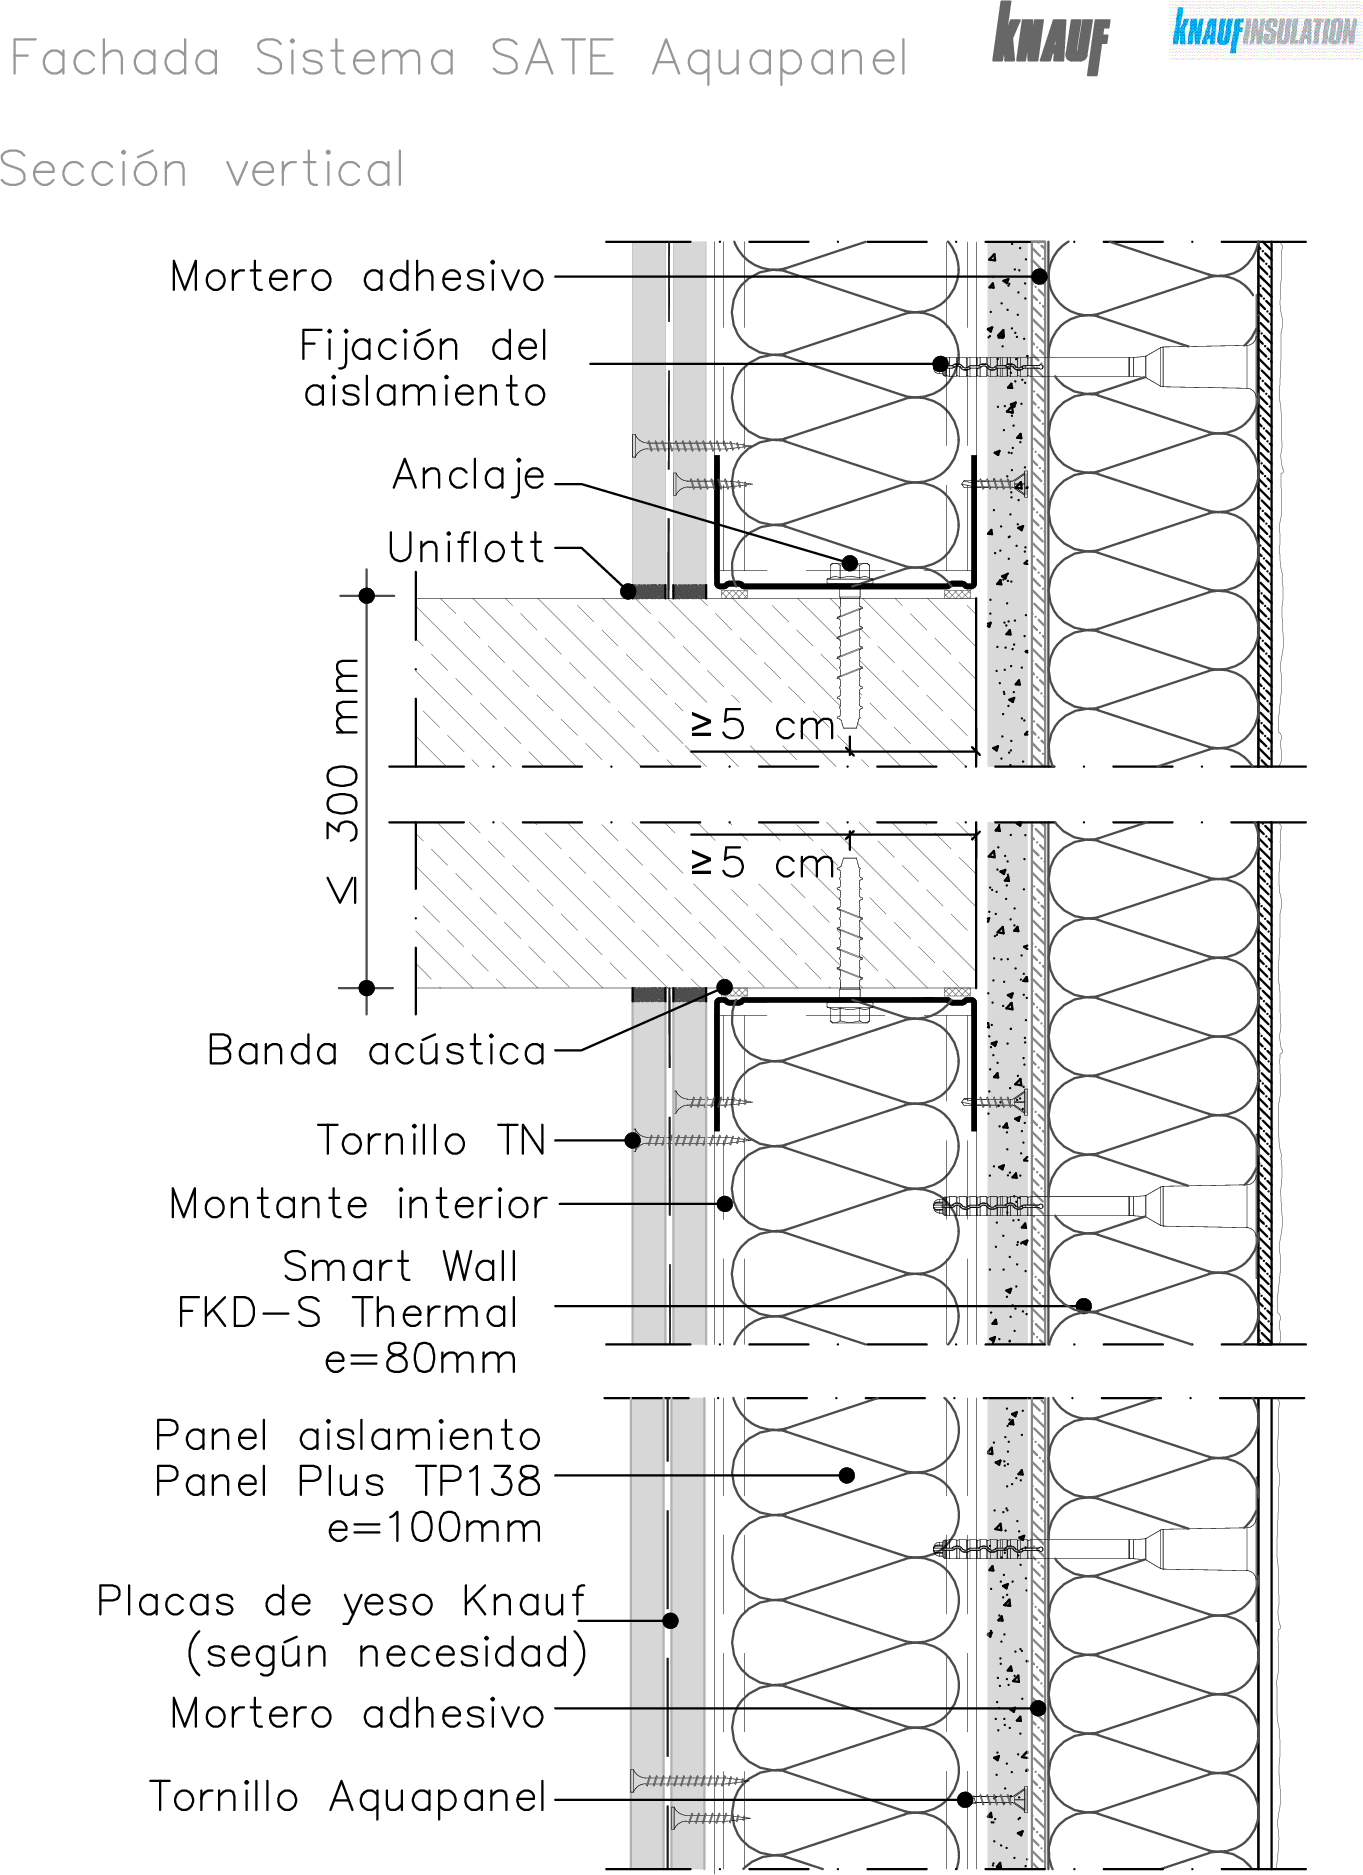 Fachada ligera ETICS - sección vertical